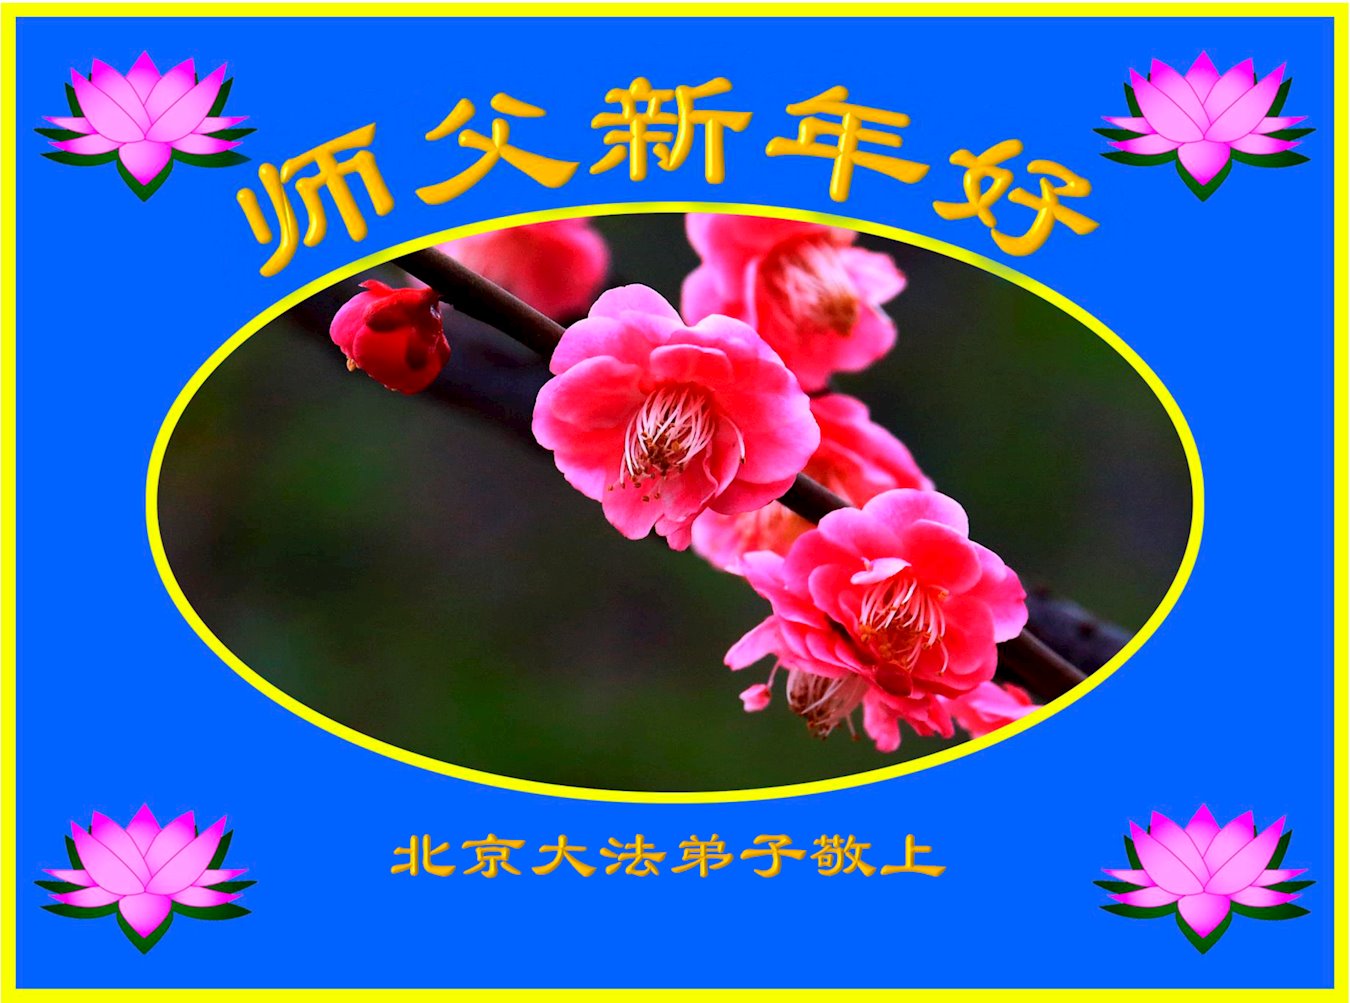 Image for article Les pratiquants de Falun Dafa de Tianjin souhaitent respectueusement au vénérable Maître Li Hongzhi un bon Nouvel An chinois ! (20 vœux)